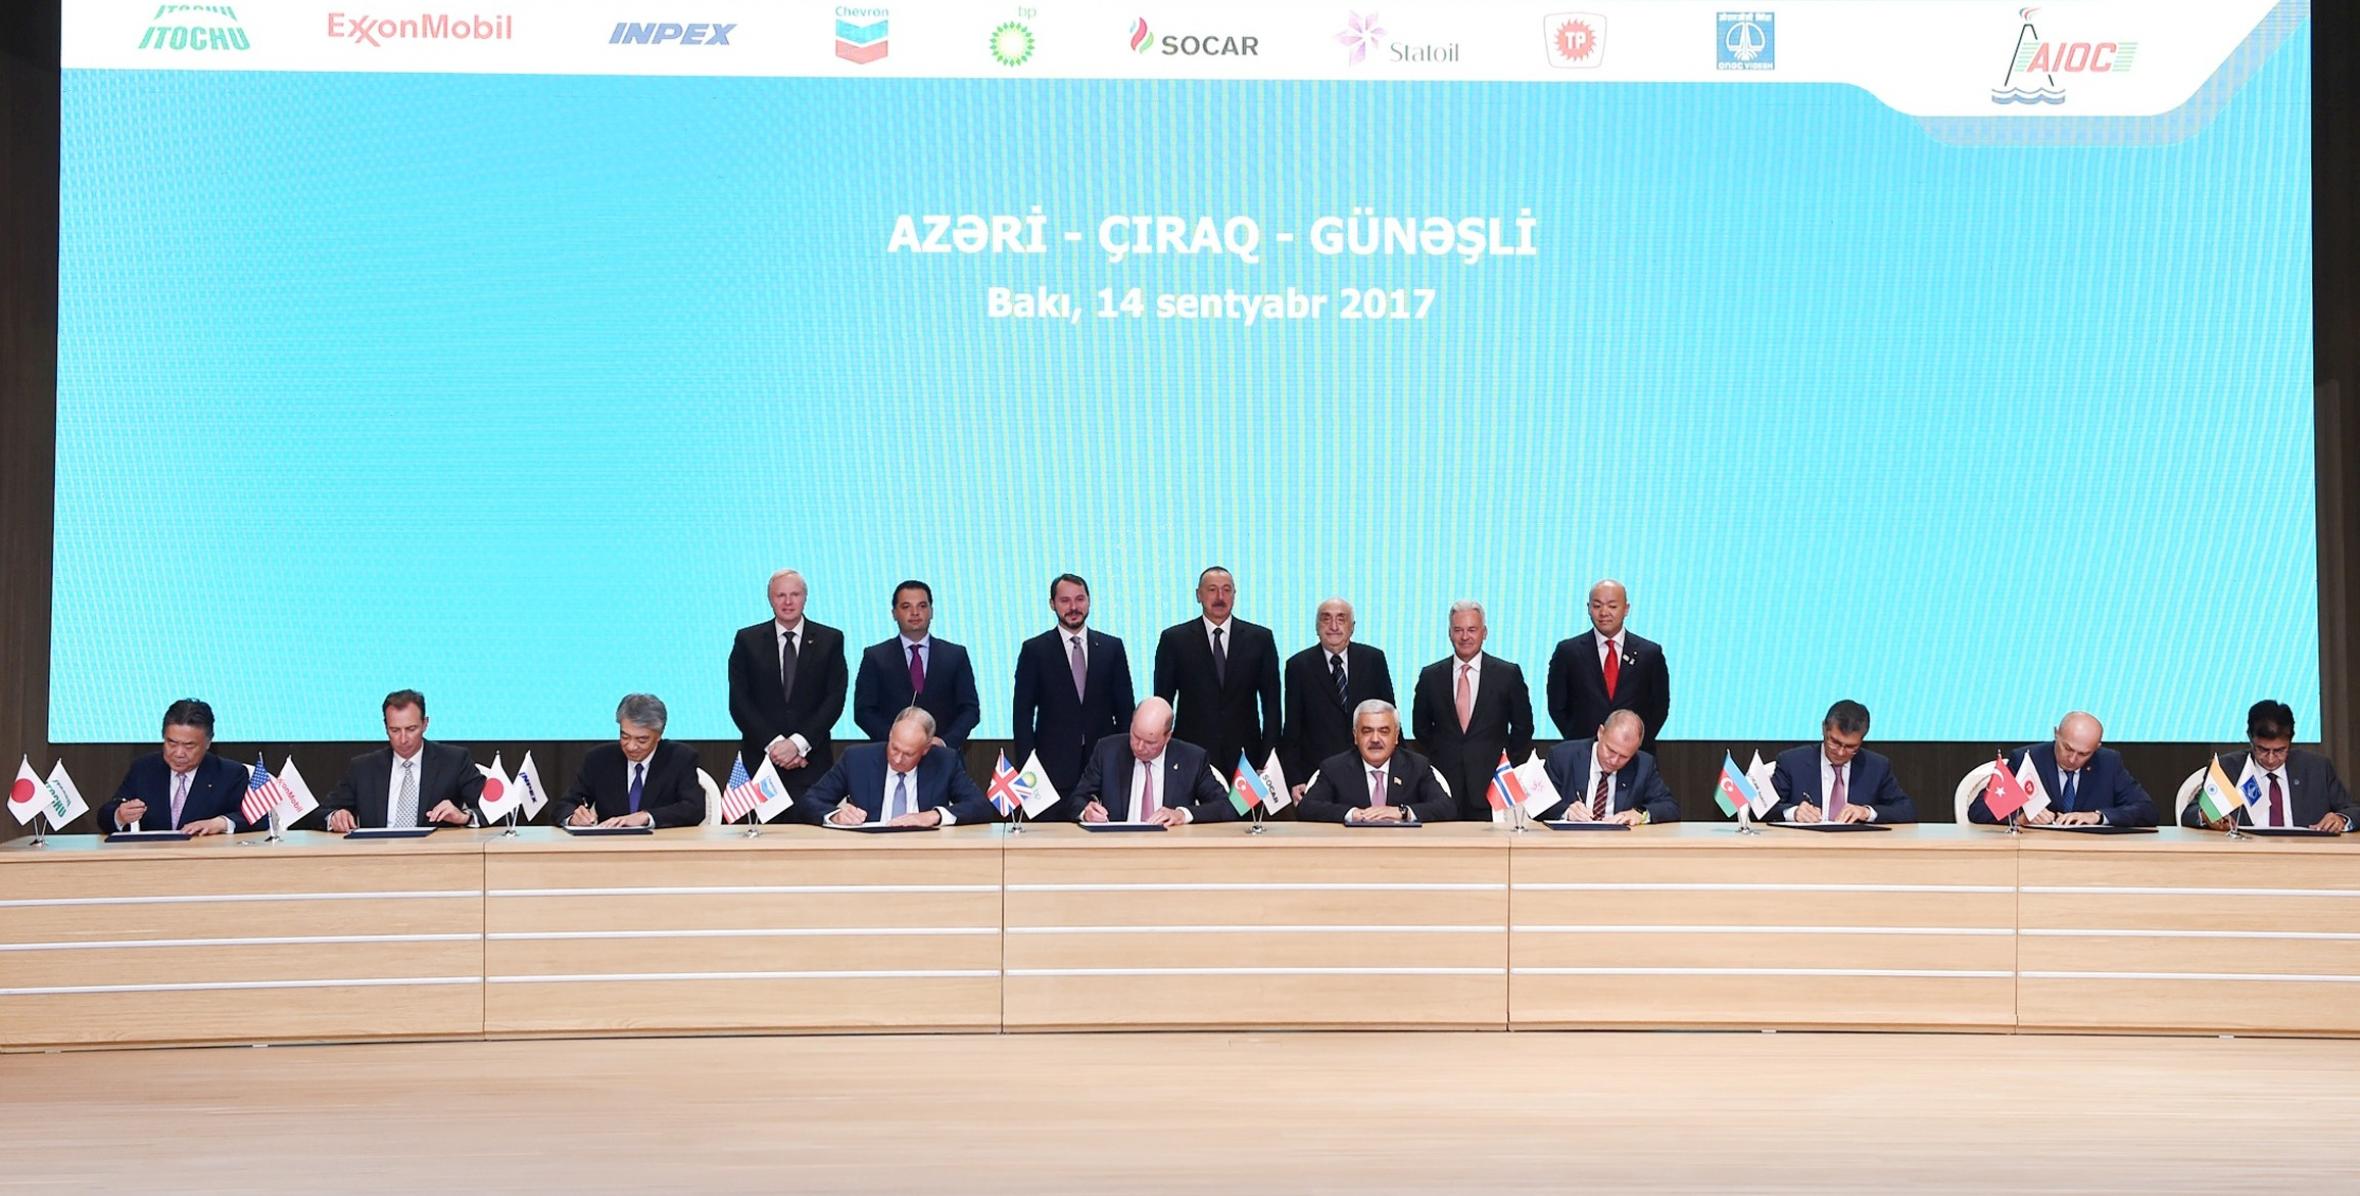 Ilham Aliyev attended signing ceremony of new agreement on Azeri-Chirag-Gunashli oilfields